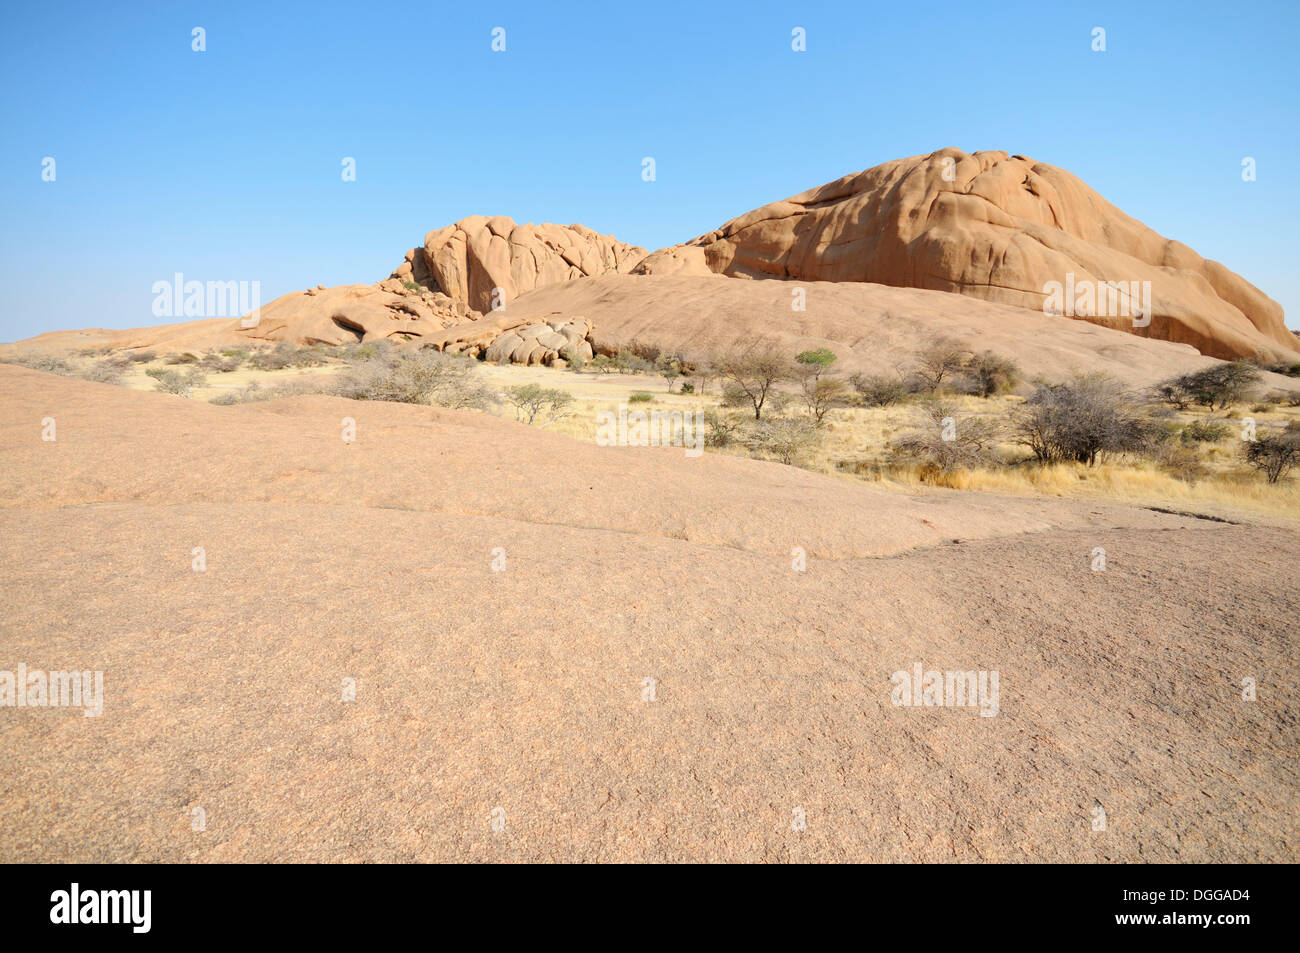 Paysage de savane avec des rochers de granit et de montagne Spitzkoppe Spitzkoppe, grosse Spitzkuppe, réserve naturelle, la Namibie Banque D'Images